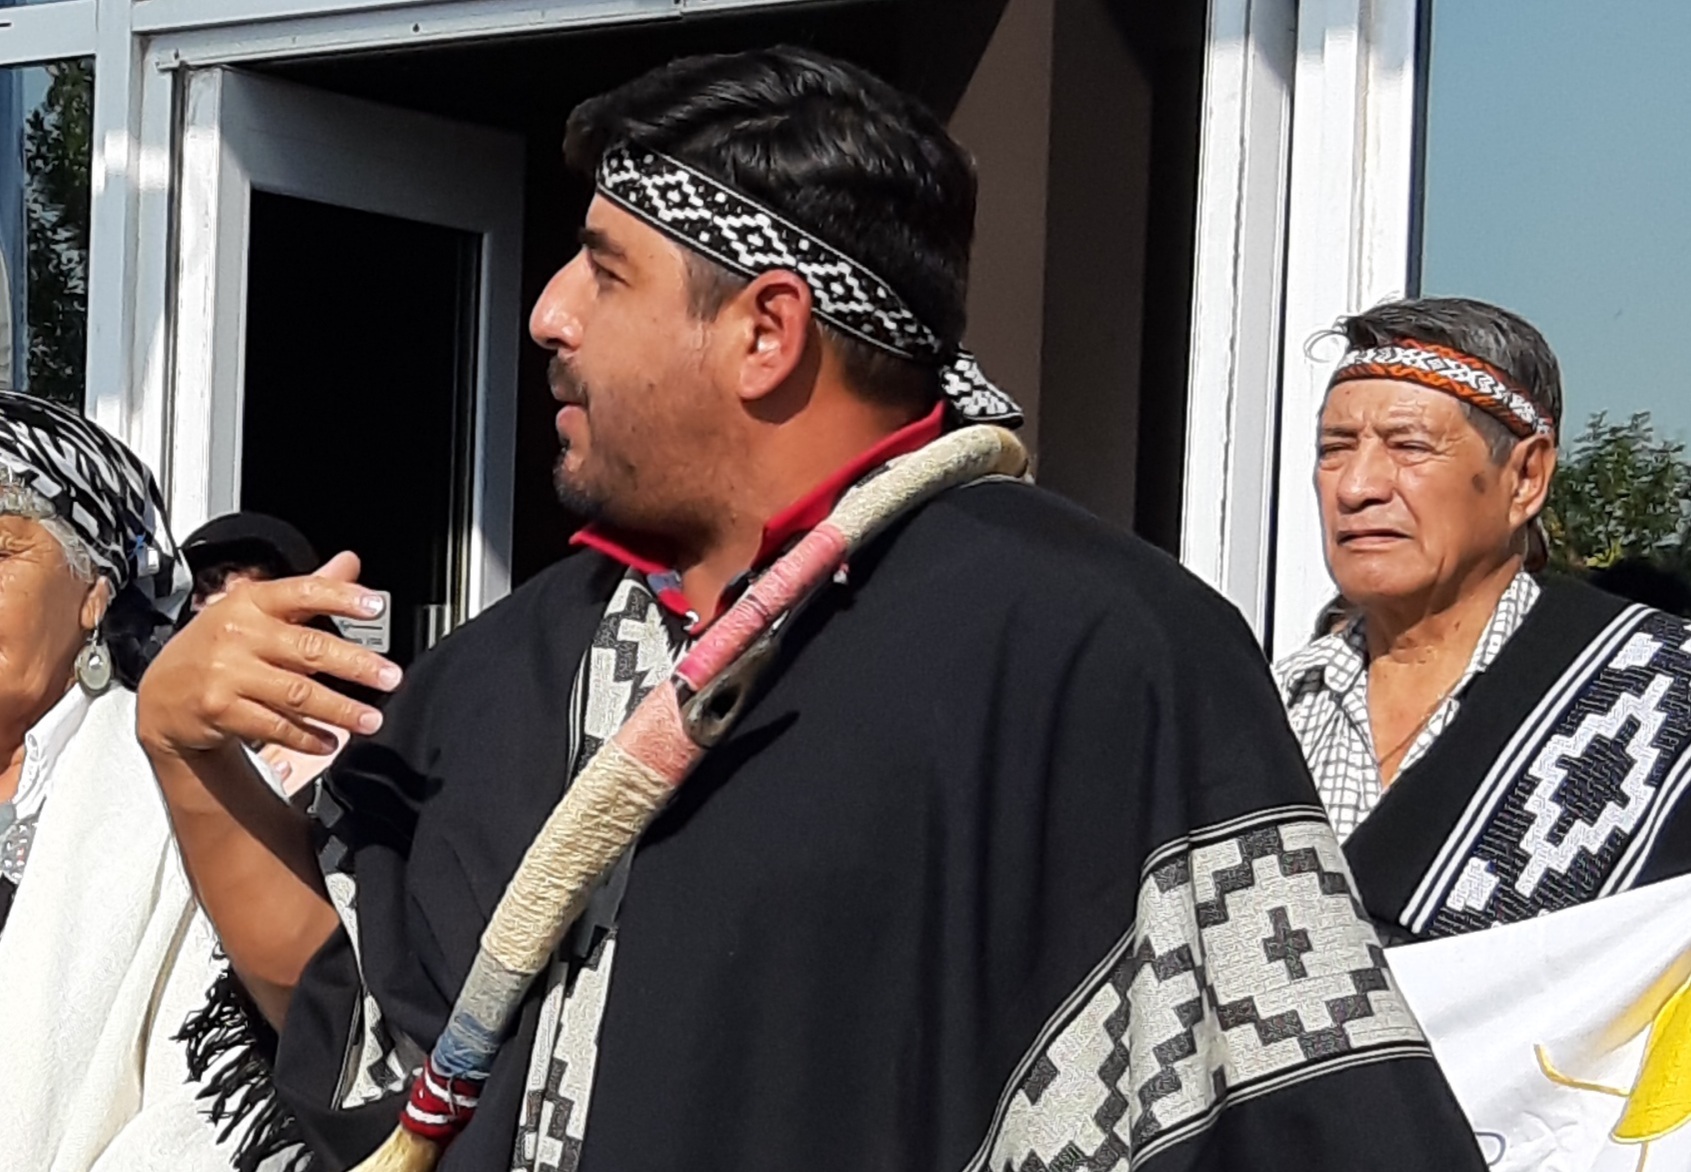 Hecho histórico en La Pampa: después de más de cien años, vuelve a celebrarse un enterratorio a la manera ancestral